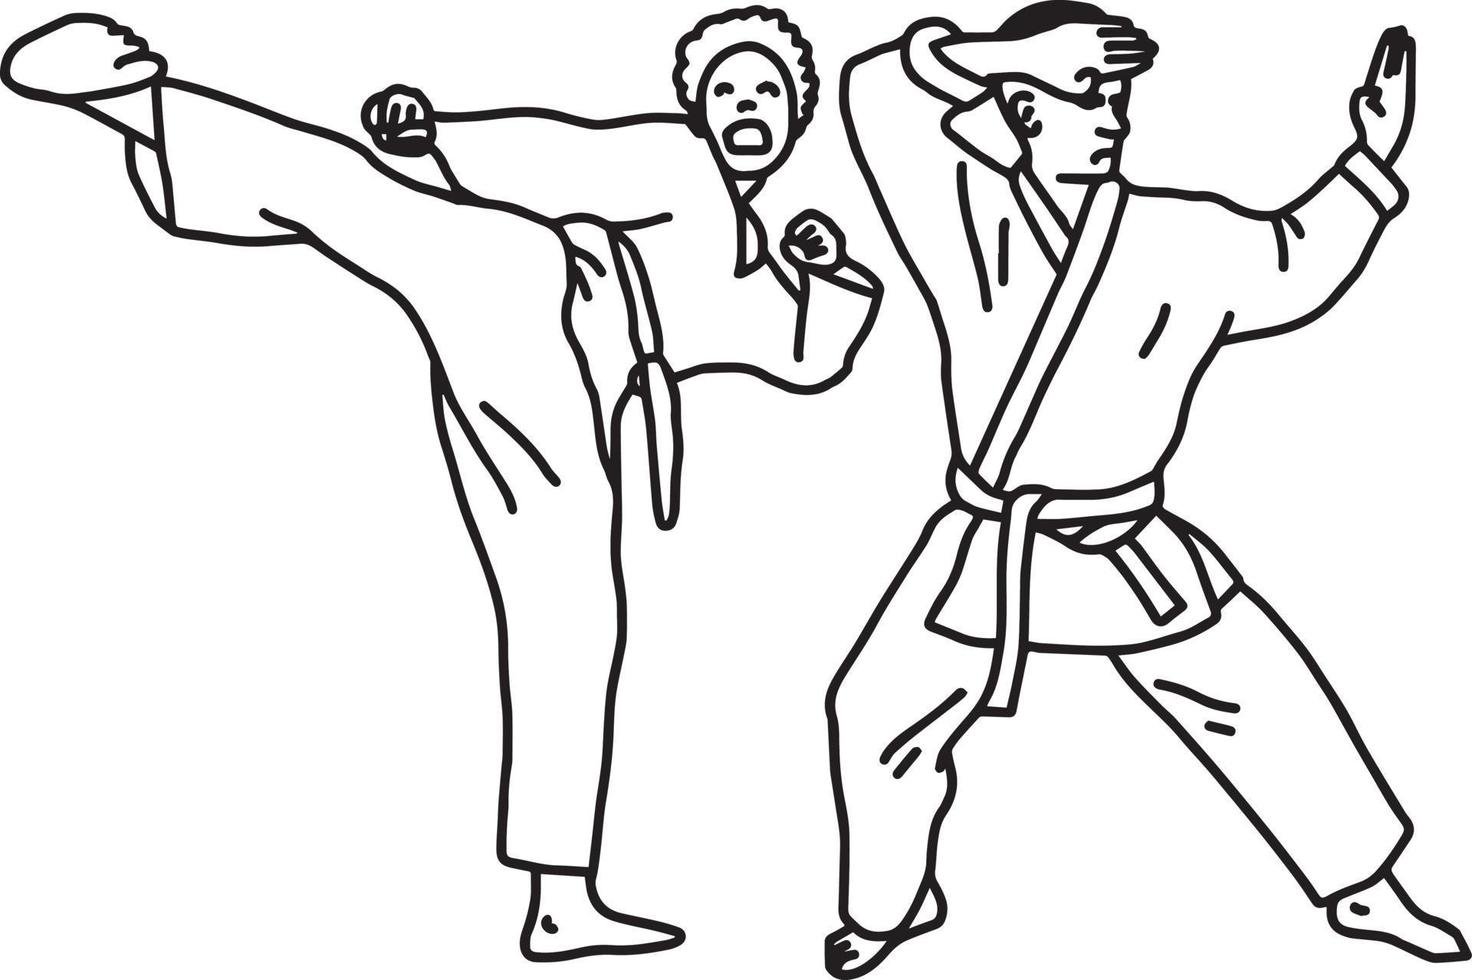 karate idrottare - vektor illustration skiss handritad